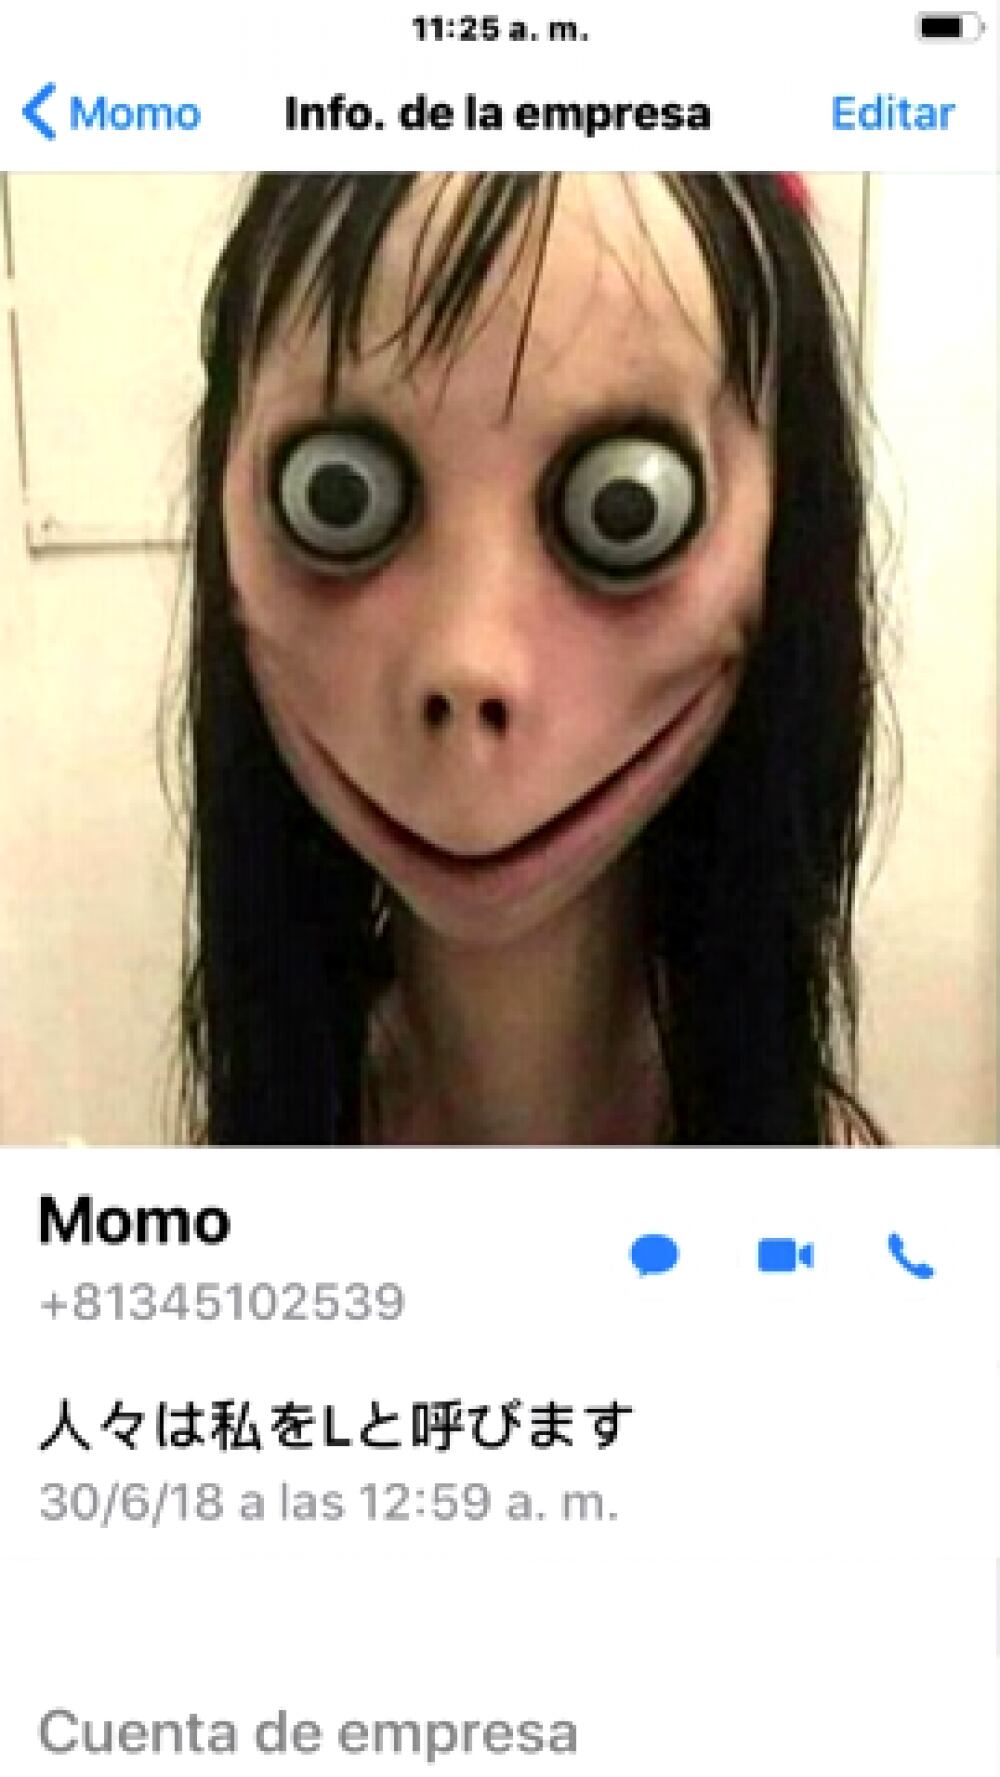 'Momo' el misterioso usuario de WhatsApp que nunca deberías contactar por tu seguridad cibernética (Foto: Captura)